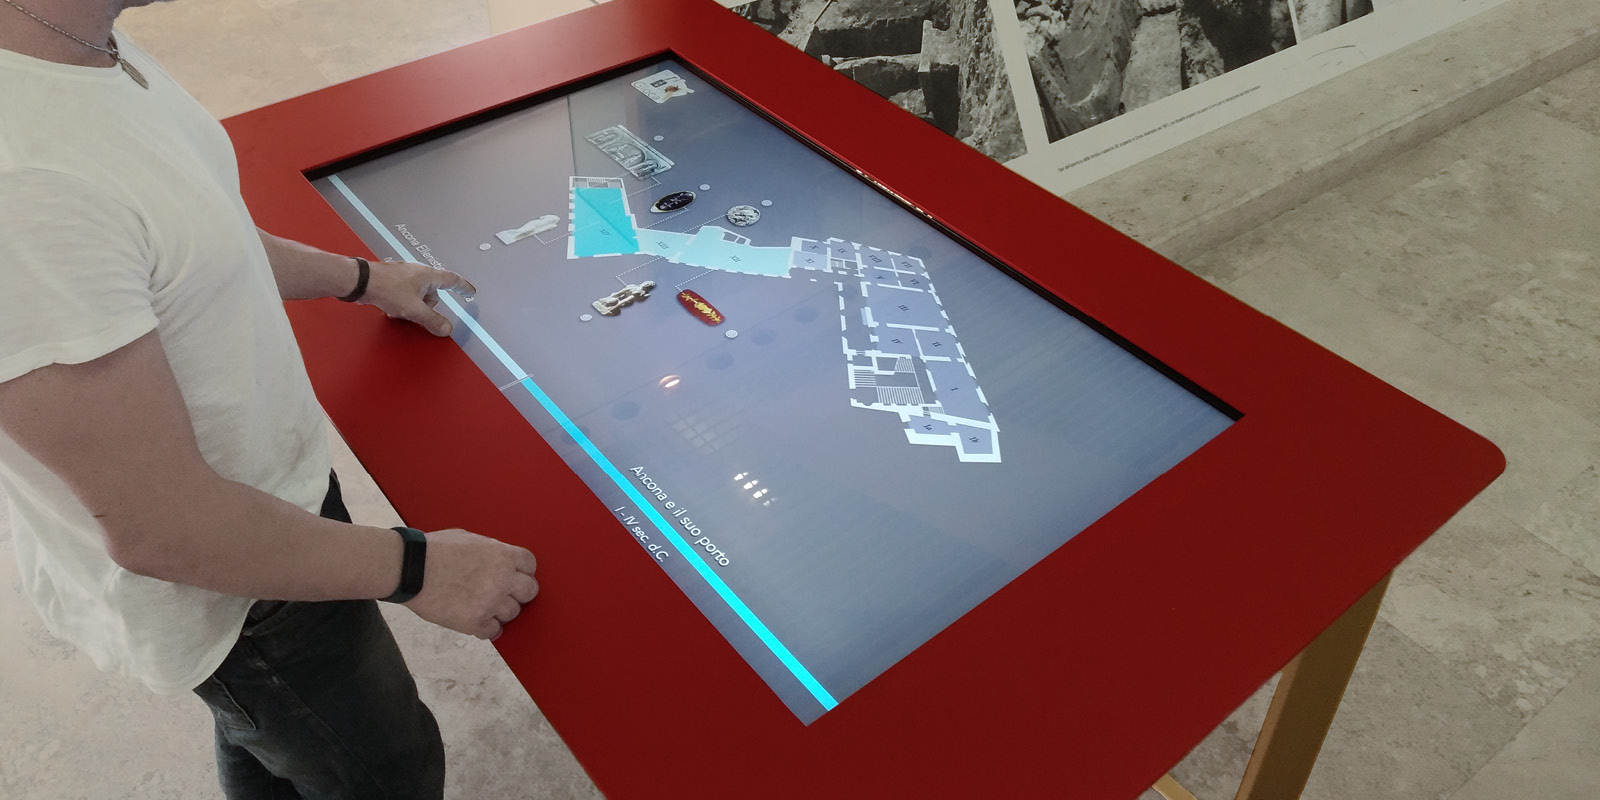 Touchwindow - L'esperienza al Museo diventa interattiva!